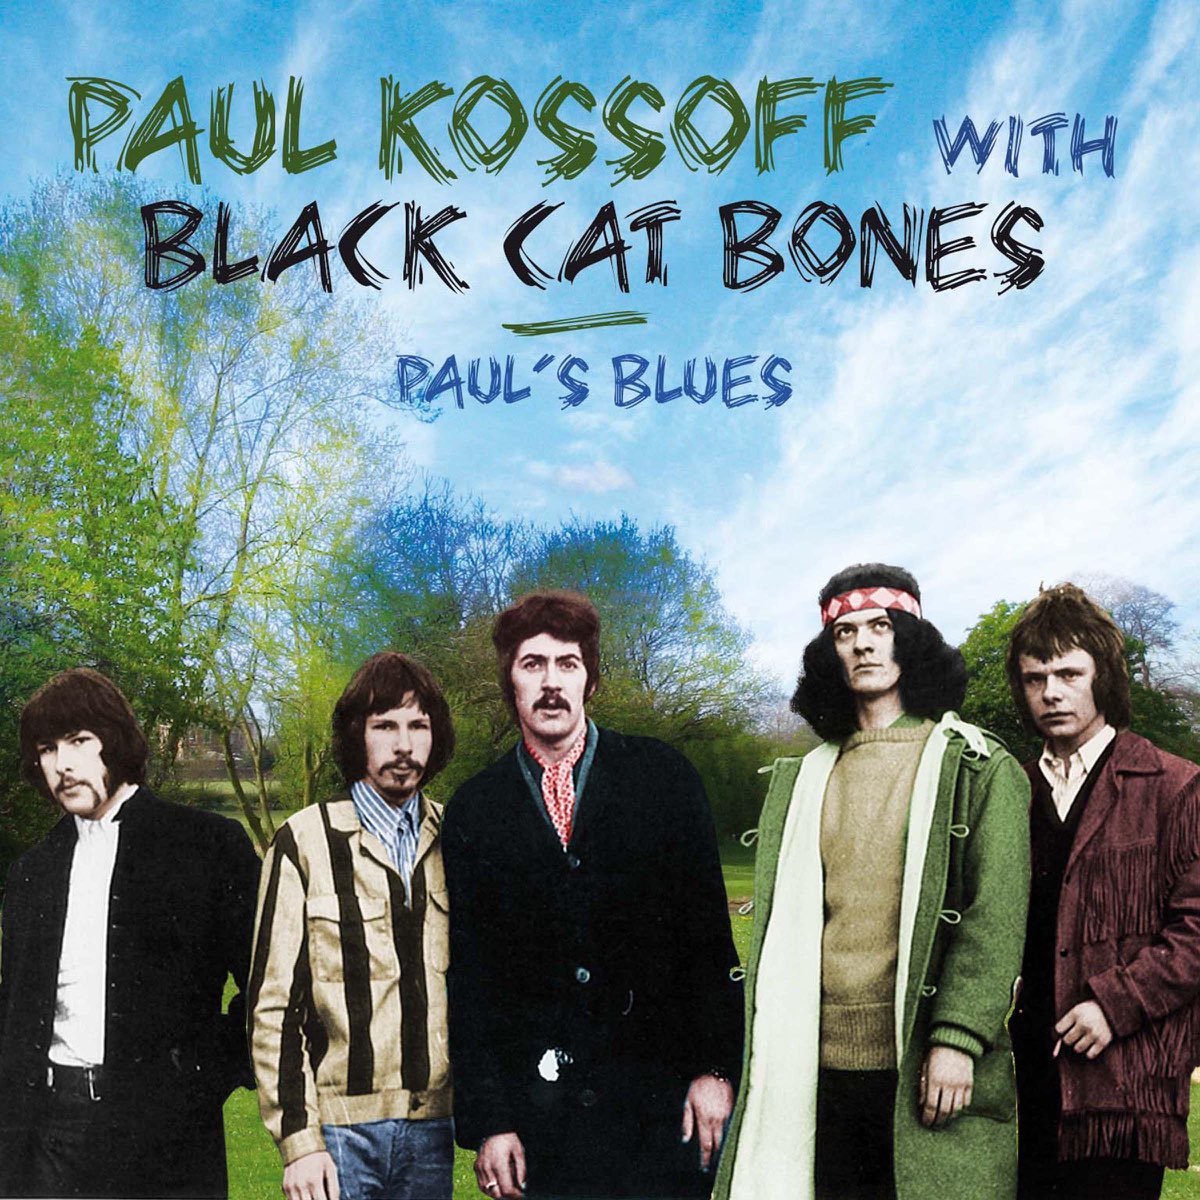 Black cat bone. Группа Black Cat Bones. Black Cat Bones Paul's Blues. Paul Kossoff.